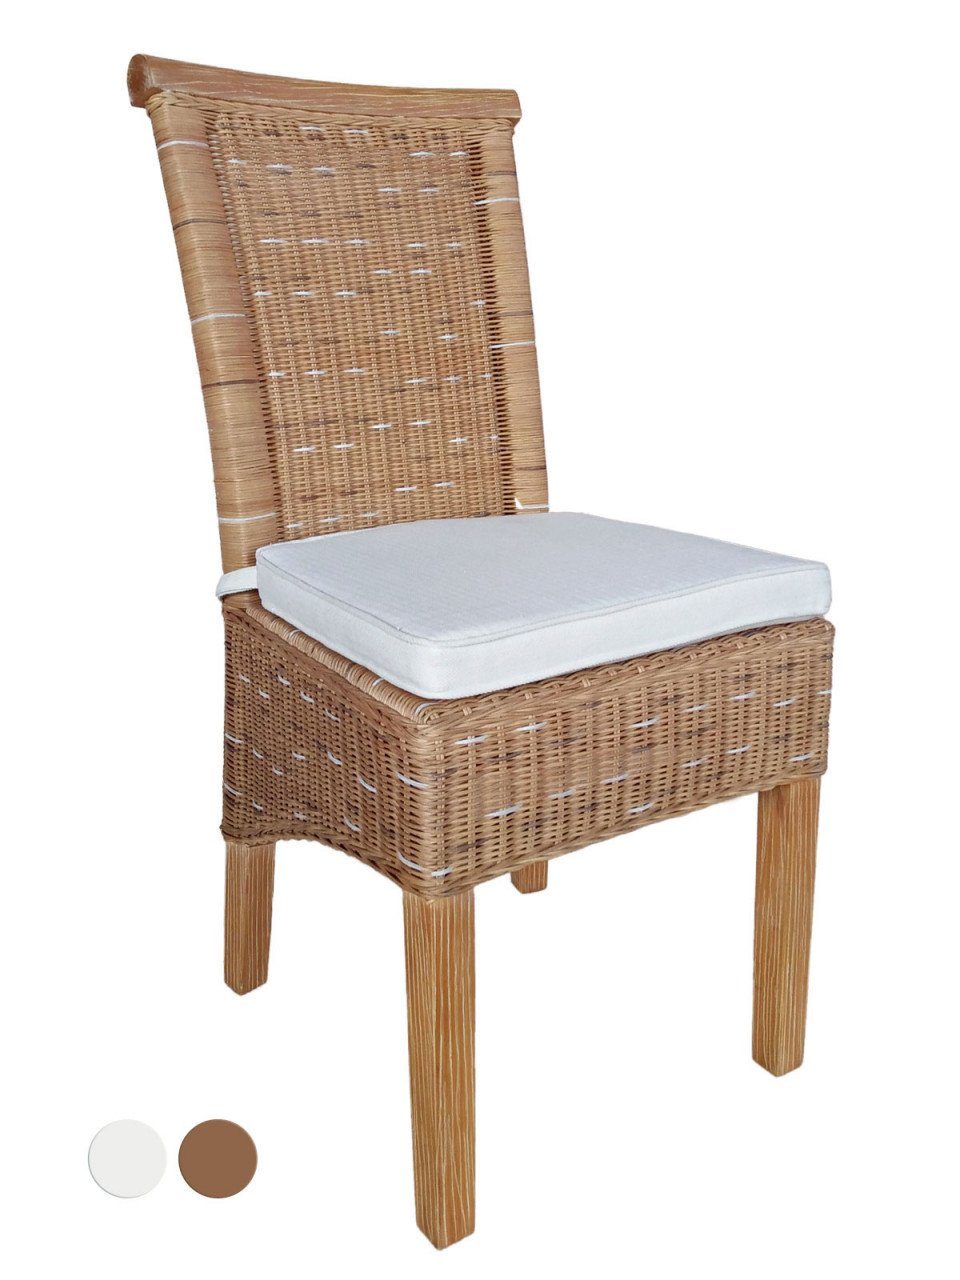 soma Sessel Soma Esszimmer-Stühle Set Rattanstühle Perth 6 Stück weiß oder braun S, Stuhl Sessel Sitzplatz Sitzmöbel | Einzelsessel